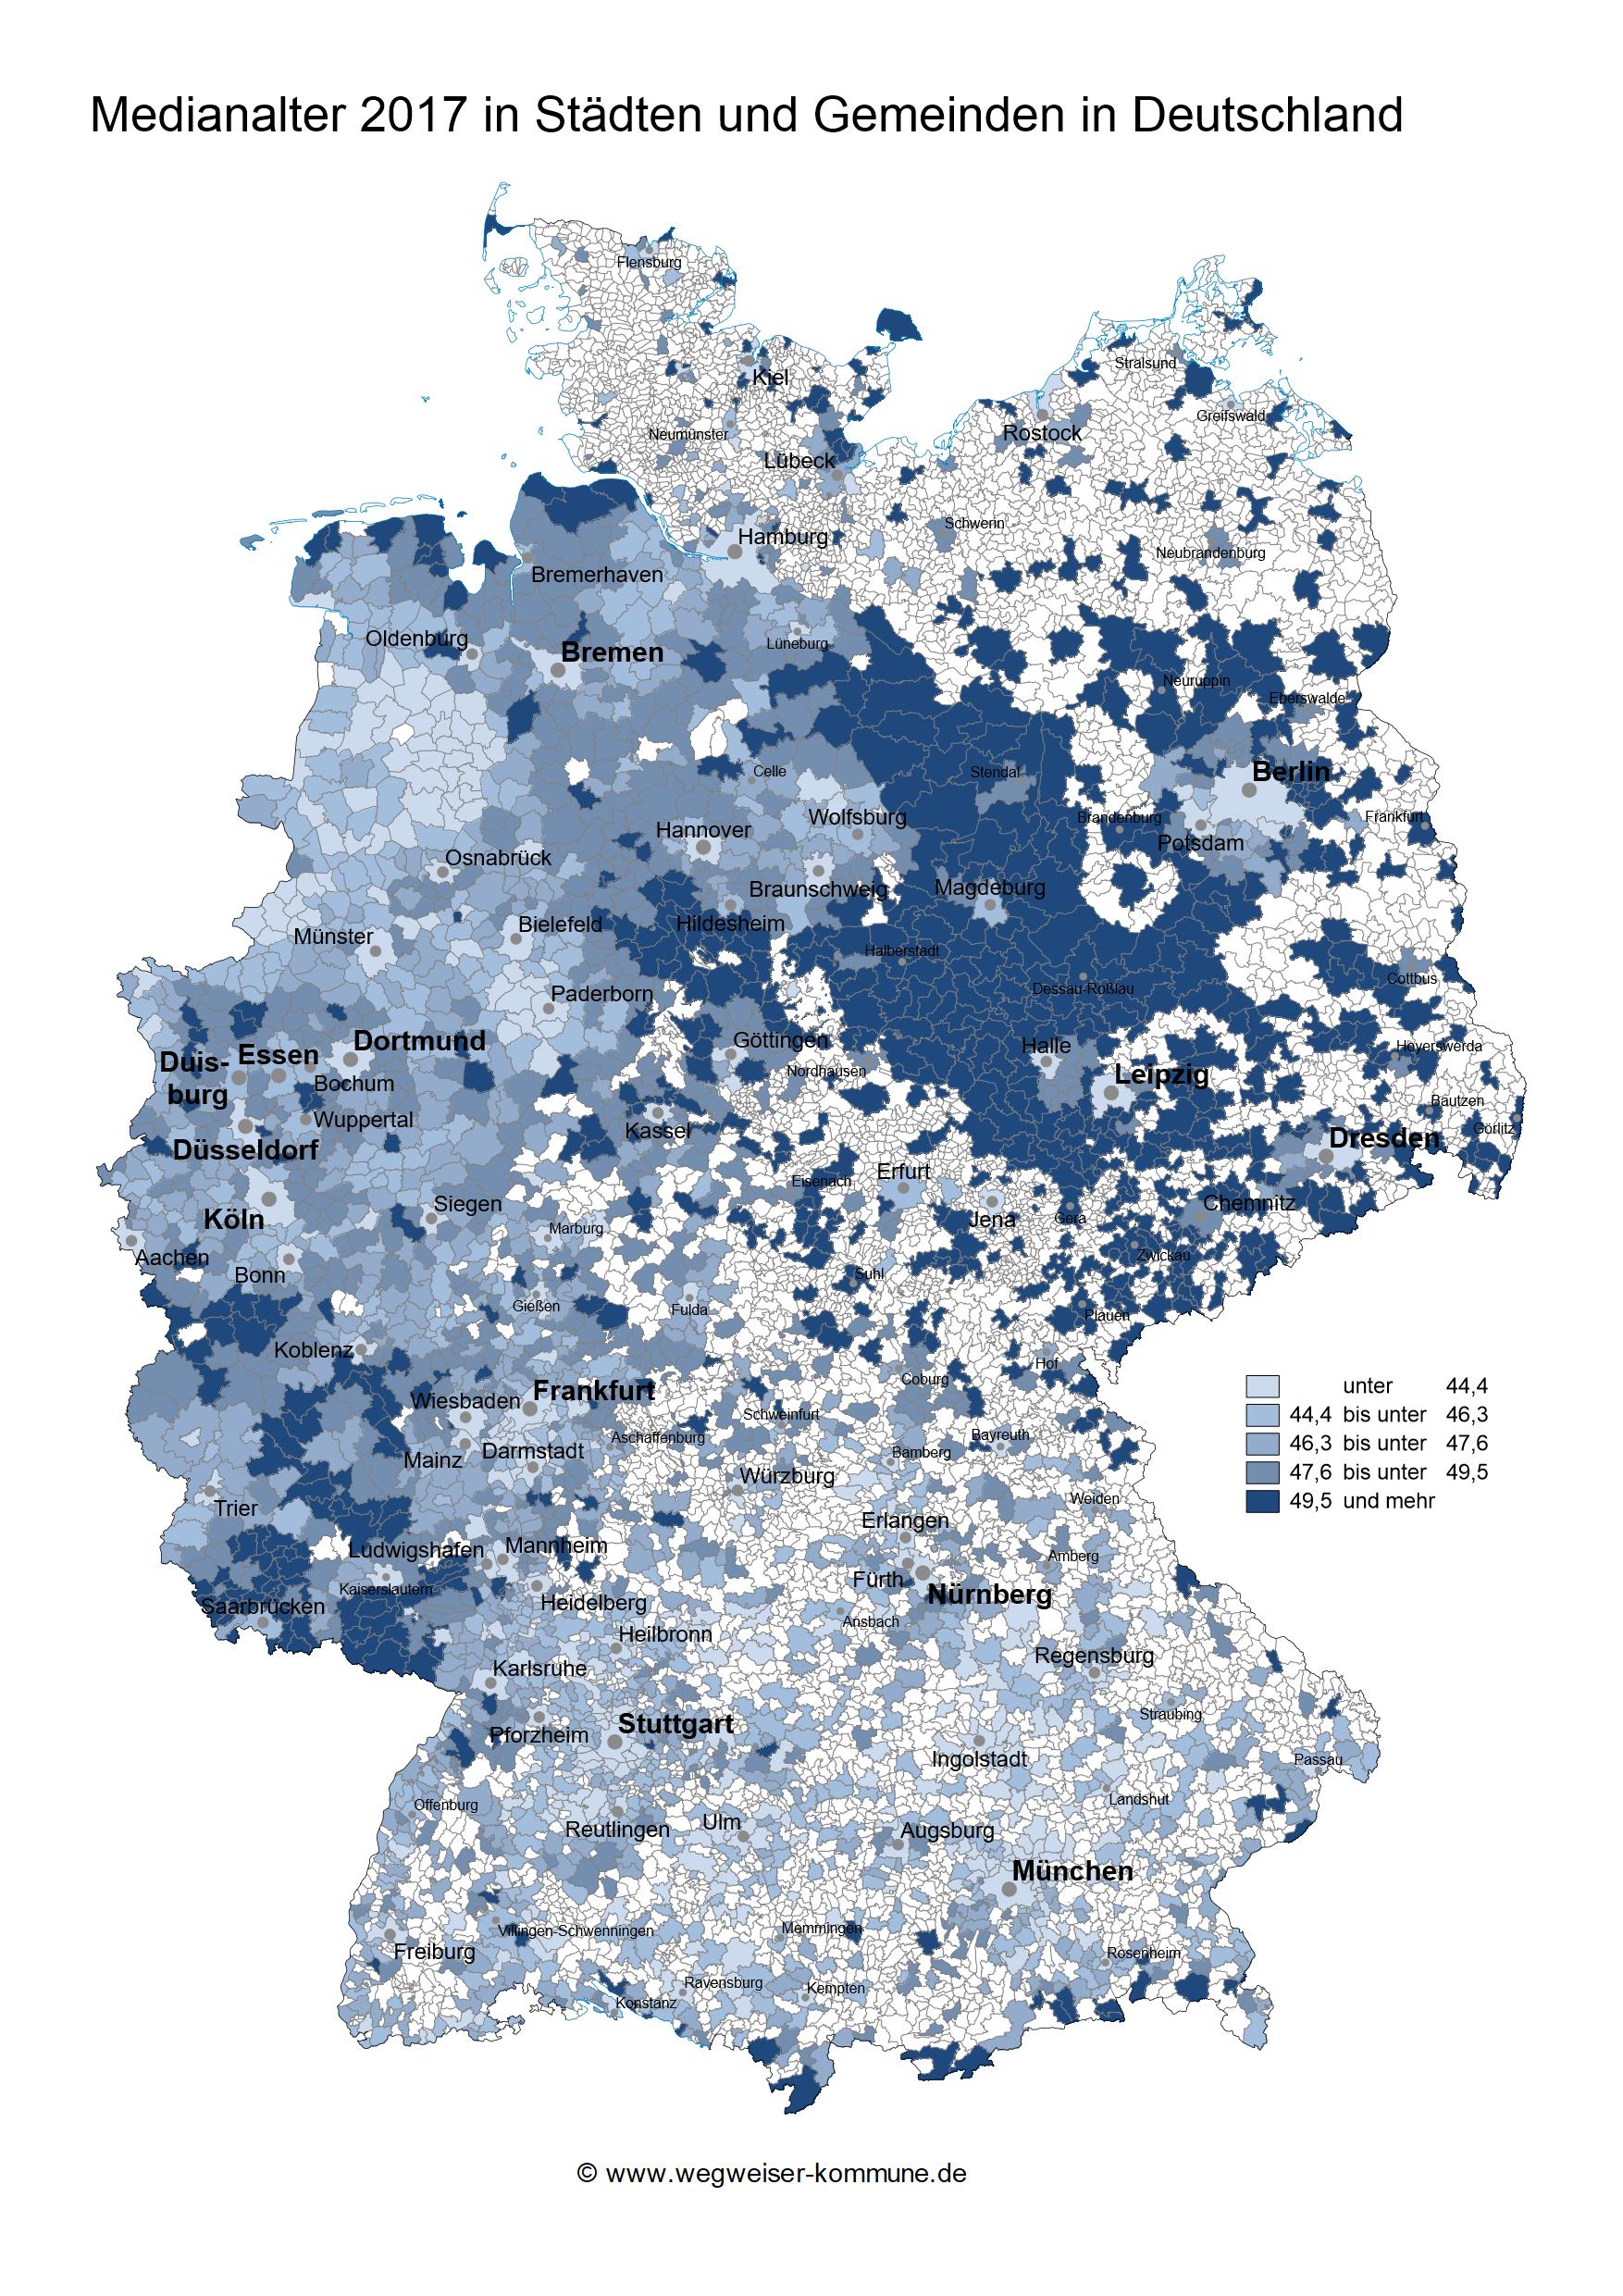 Das MEdianalter 2017 in Städten und Gemeinden, visualisiert auf einer Deutschlandkarte